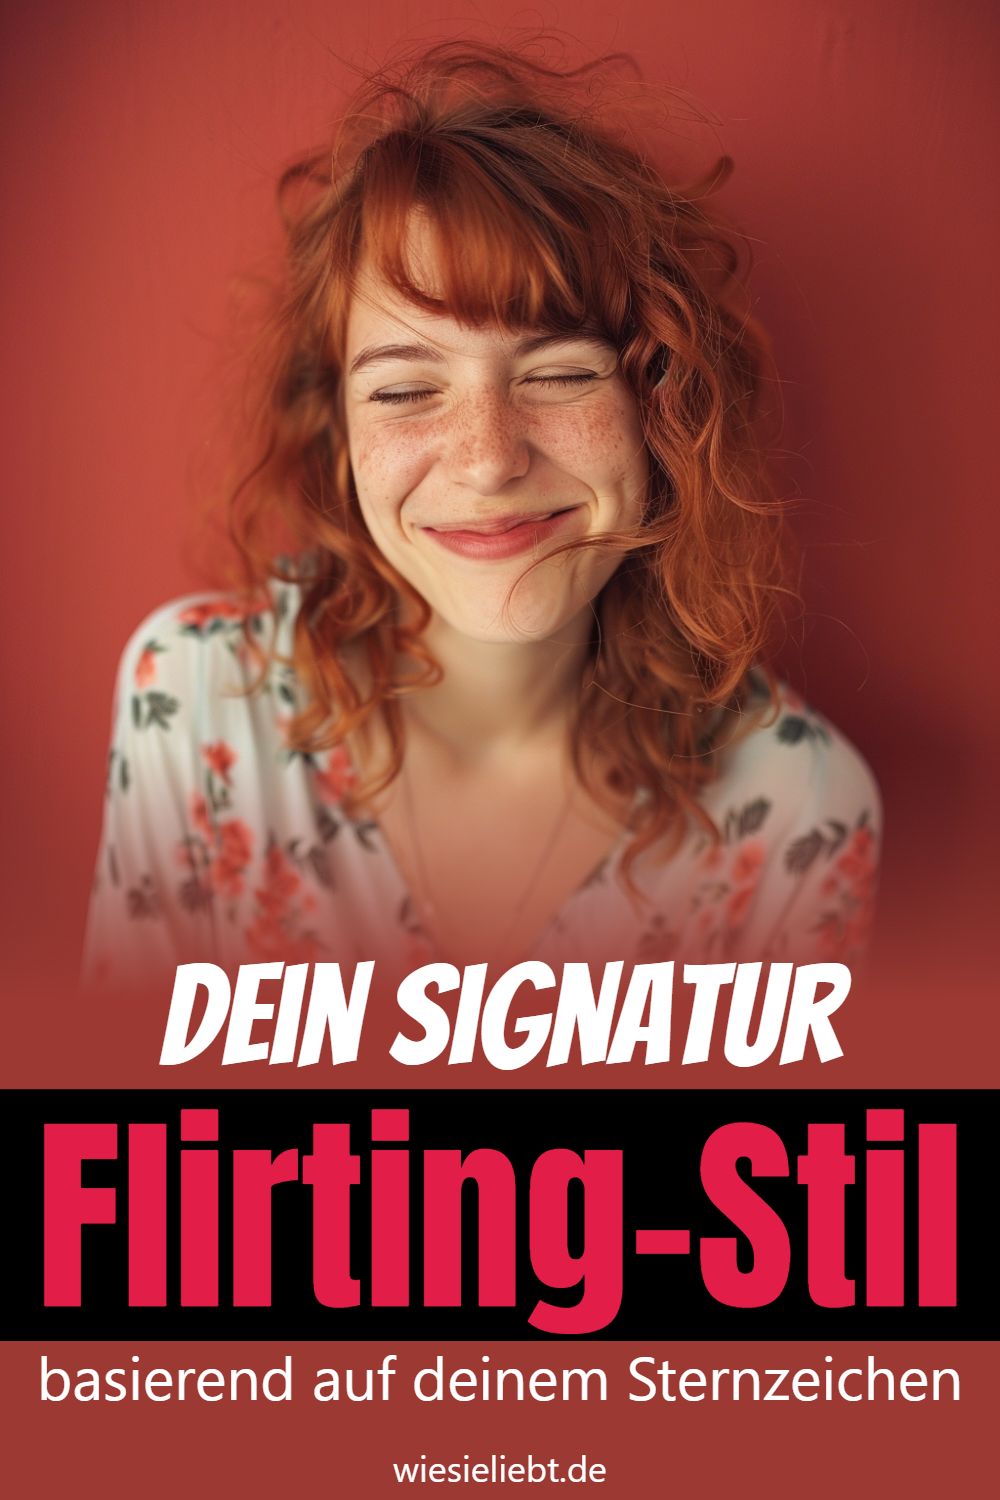 Dein Signatur Flirting-Stil basierend auf deinem Sternzeichen